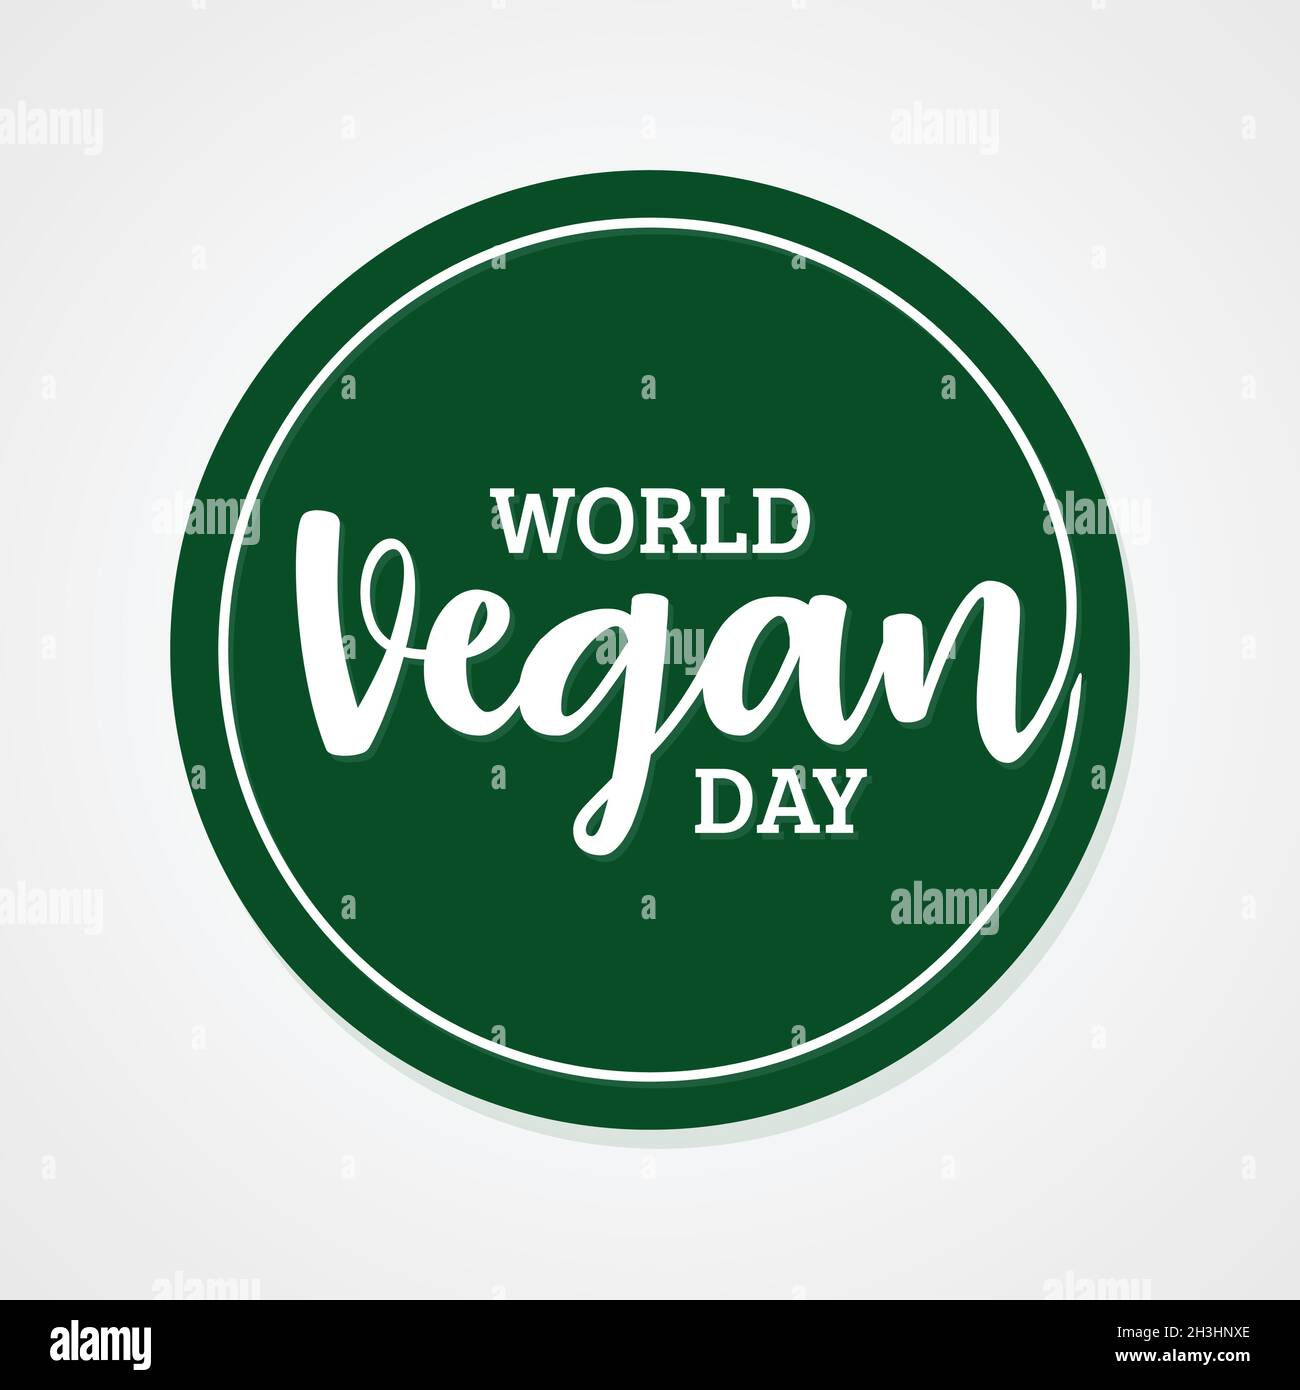 World Vegan Day sfondo vettoriale disegnato a mano. Giornata mondiale del Vegan per il modello di progettazione degli elementi. Illustrazione vettoriale EPS.8 EPS.10 Illustrazione Vettoriale